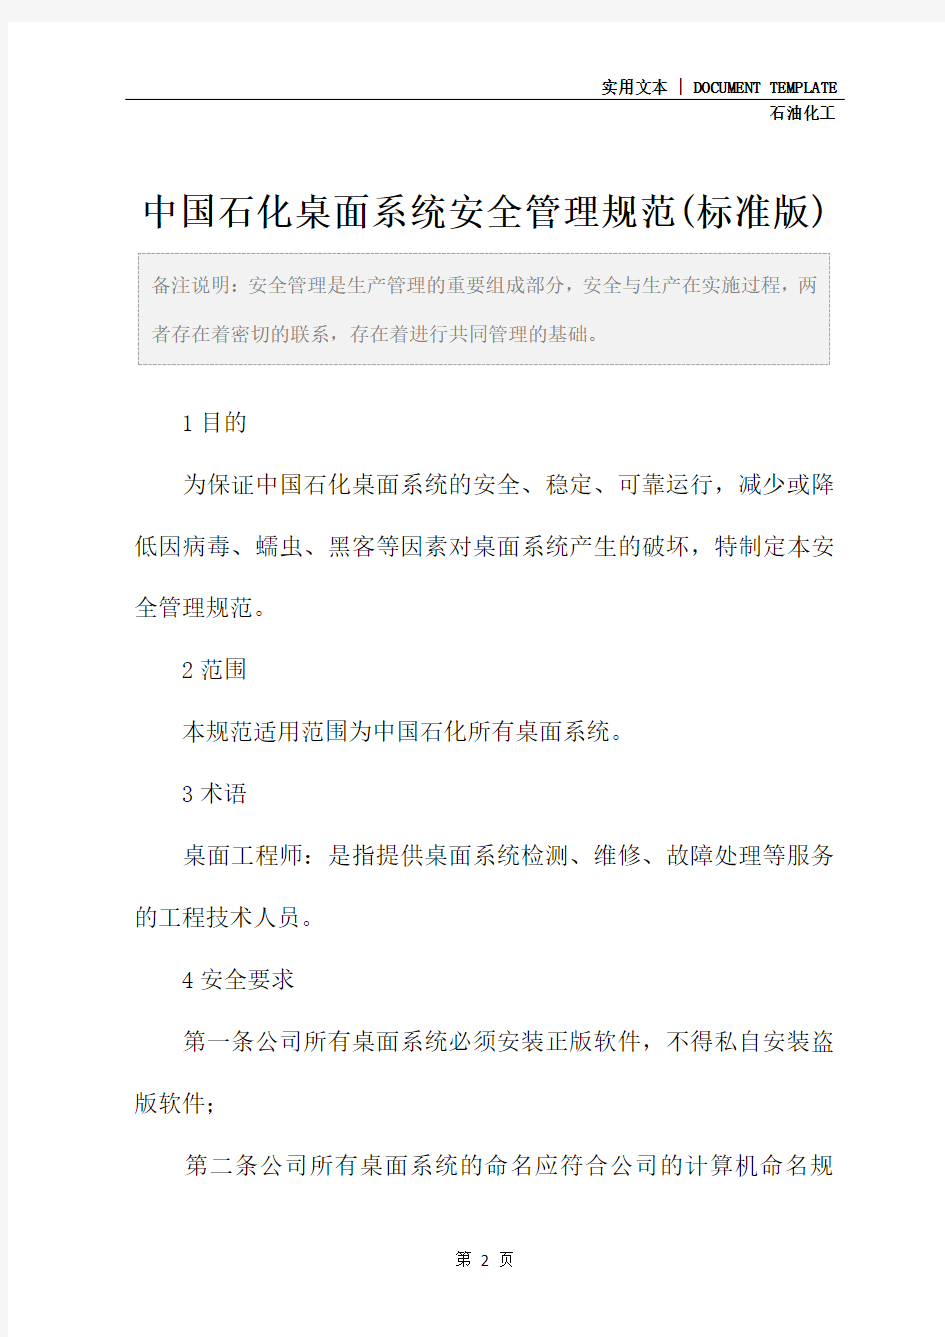 中国石化桌面系统安全管理规范(标准版)